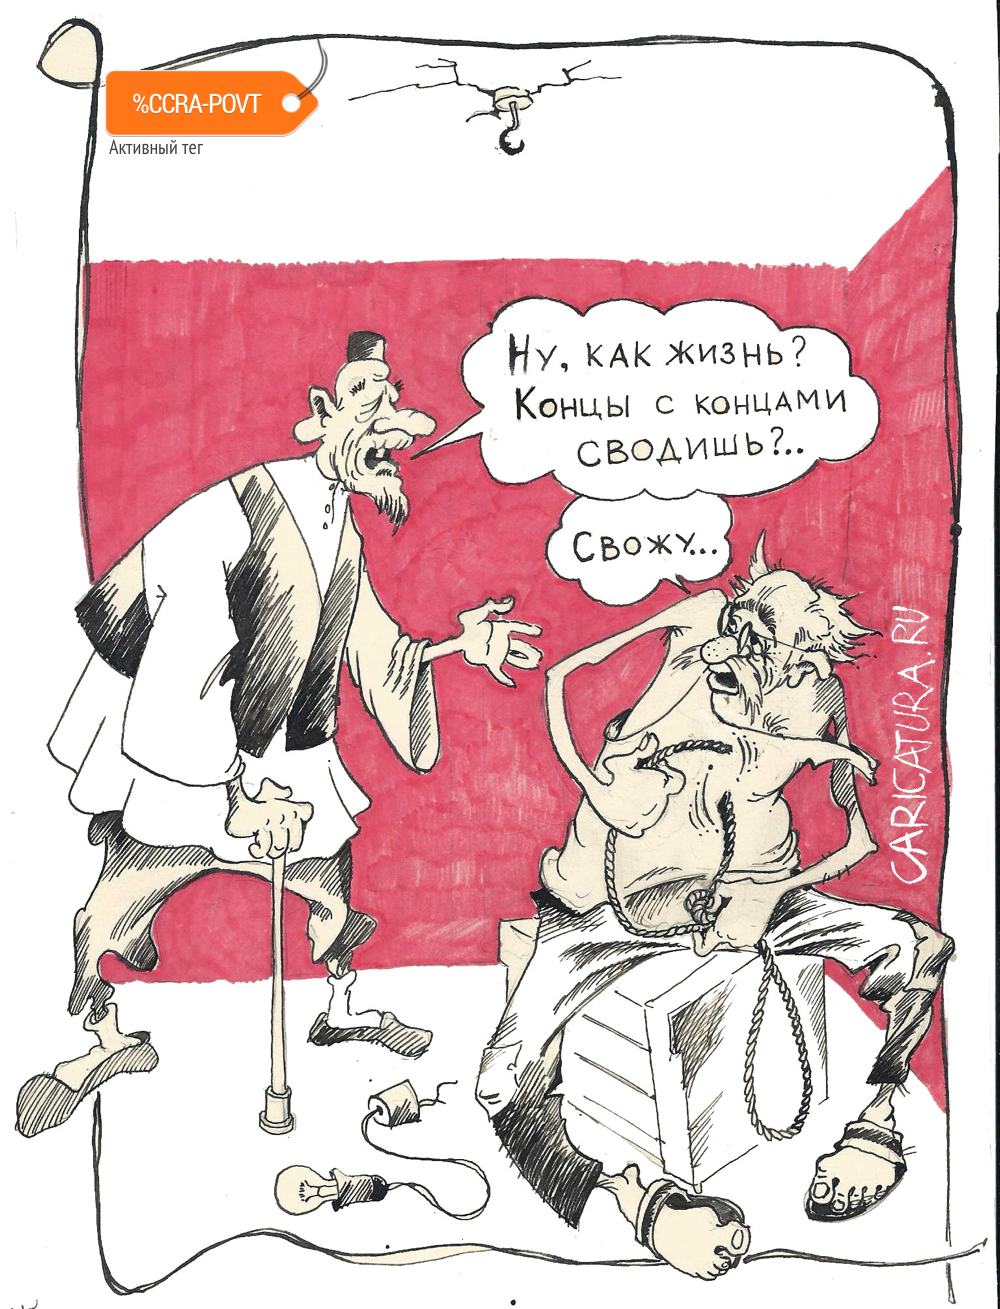 Карикатура "Концы", Александр Шульпинов